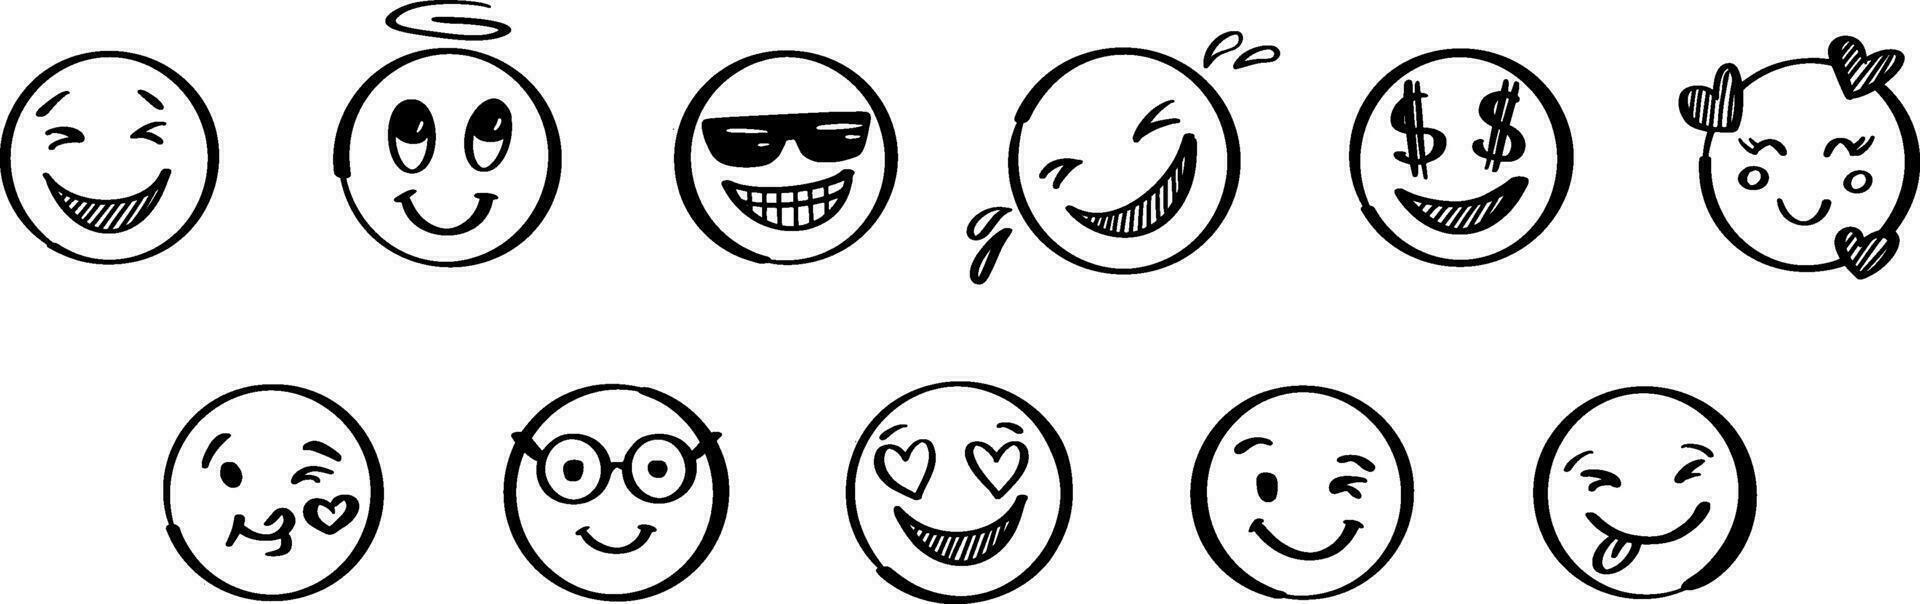 klotter positiv emoji uppsättning. hand dragen skiss vektor illustration. packa av annorlunda uttryck uttryckssymboler.